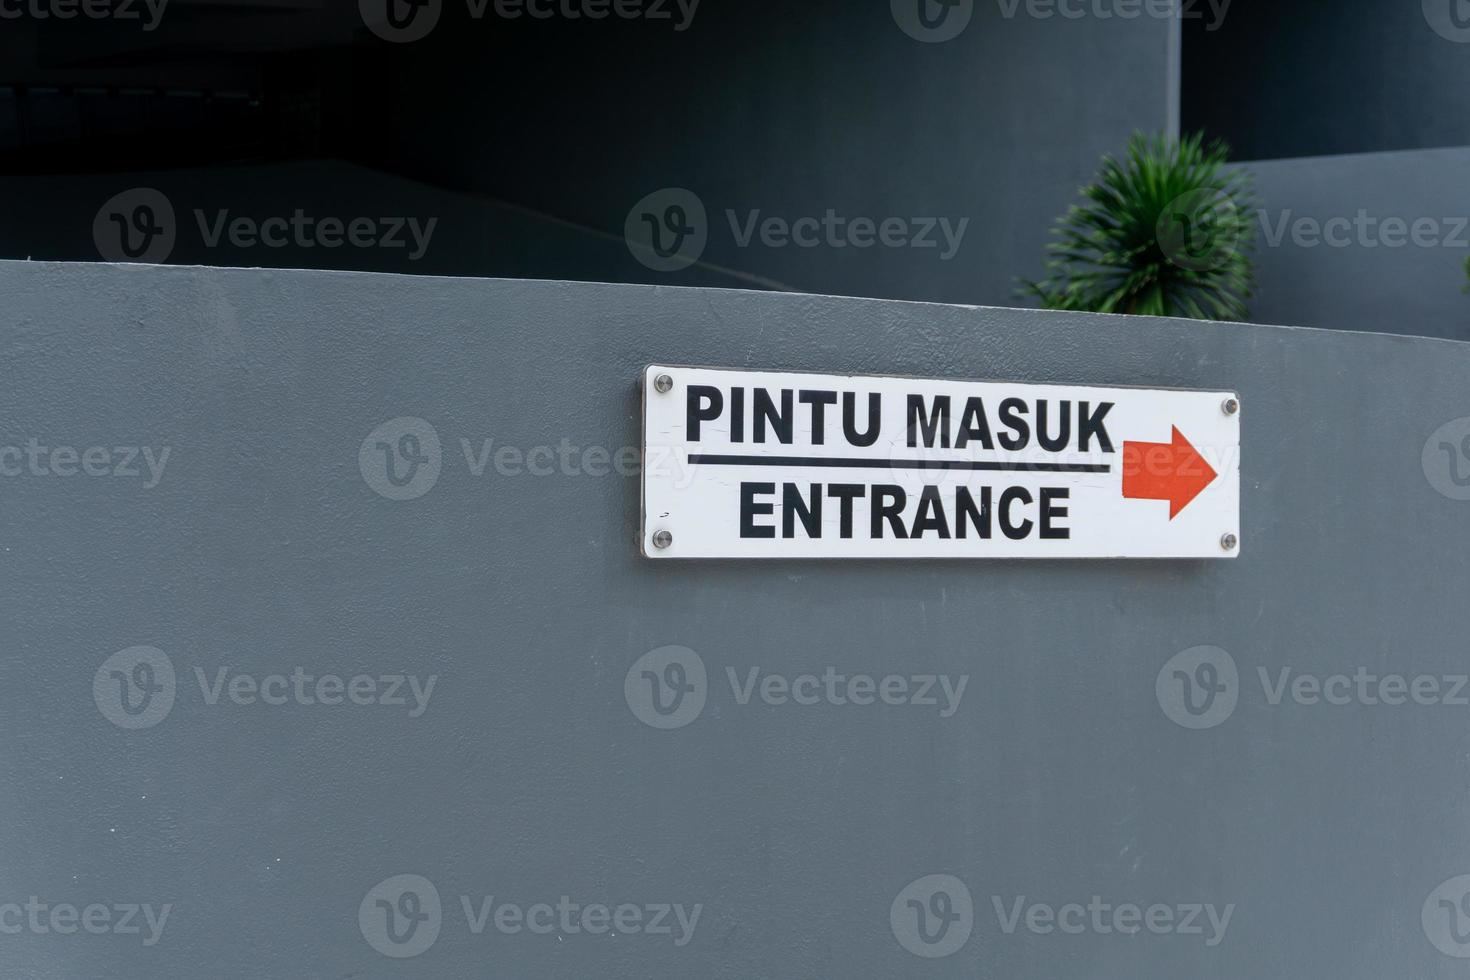 Pintu masuk mean Entrance. Entrance sign on the wall wrote in Bahasa pintu masuk photo